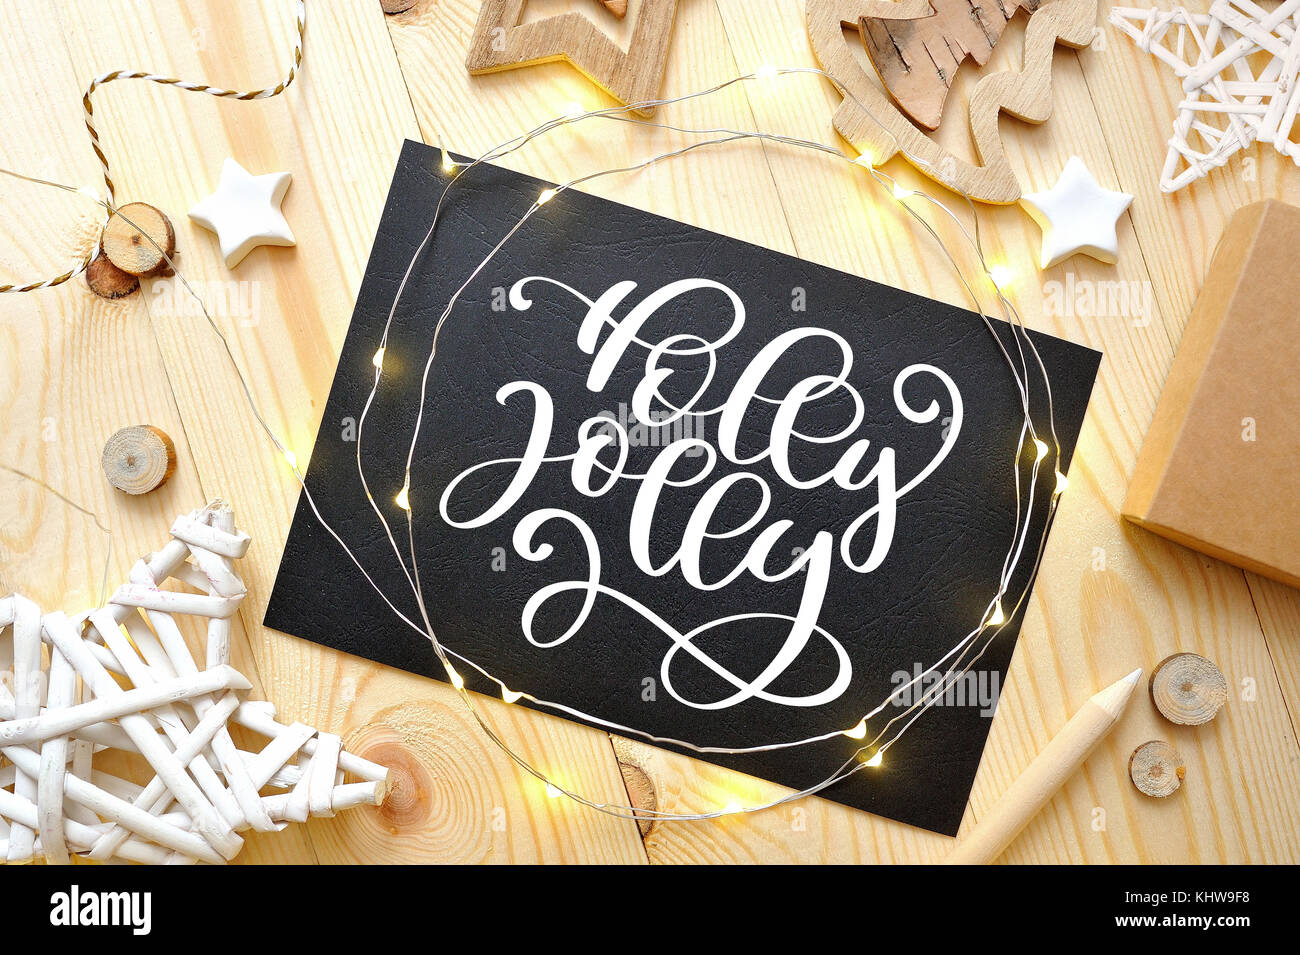 Weihnachten text Holly Jolly auf einer Schiefertafel mit Weihnachten deoccrusties Stern, Girlande auf hölzernen Hintergrund. Flach, Ansicht von oben Foto mockup Stockfoto